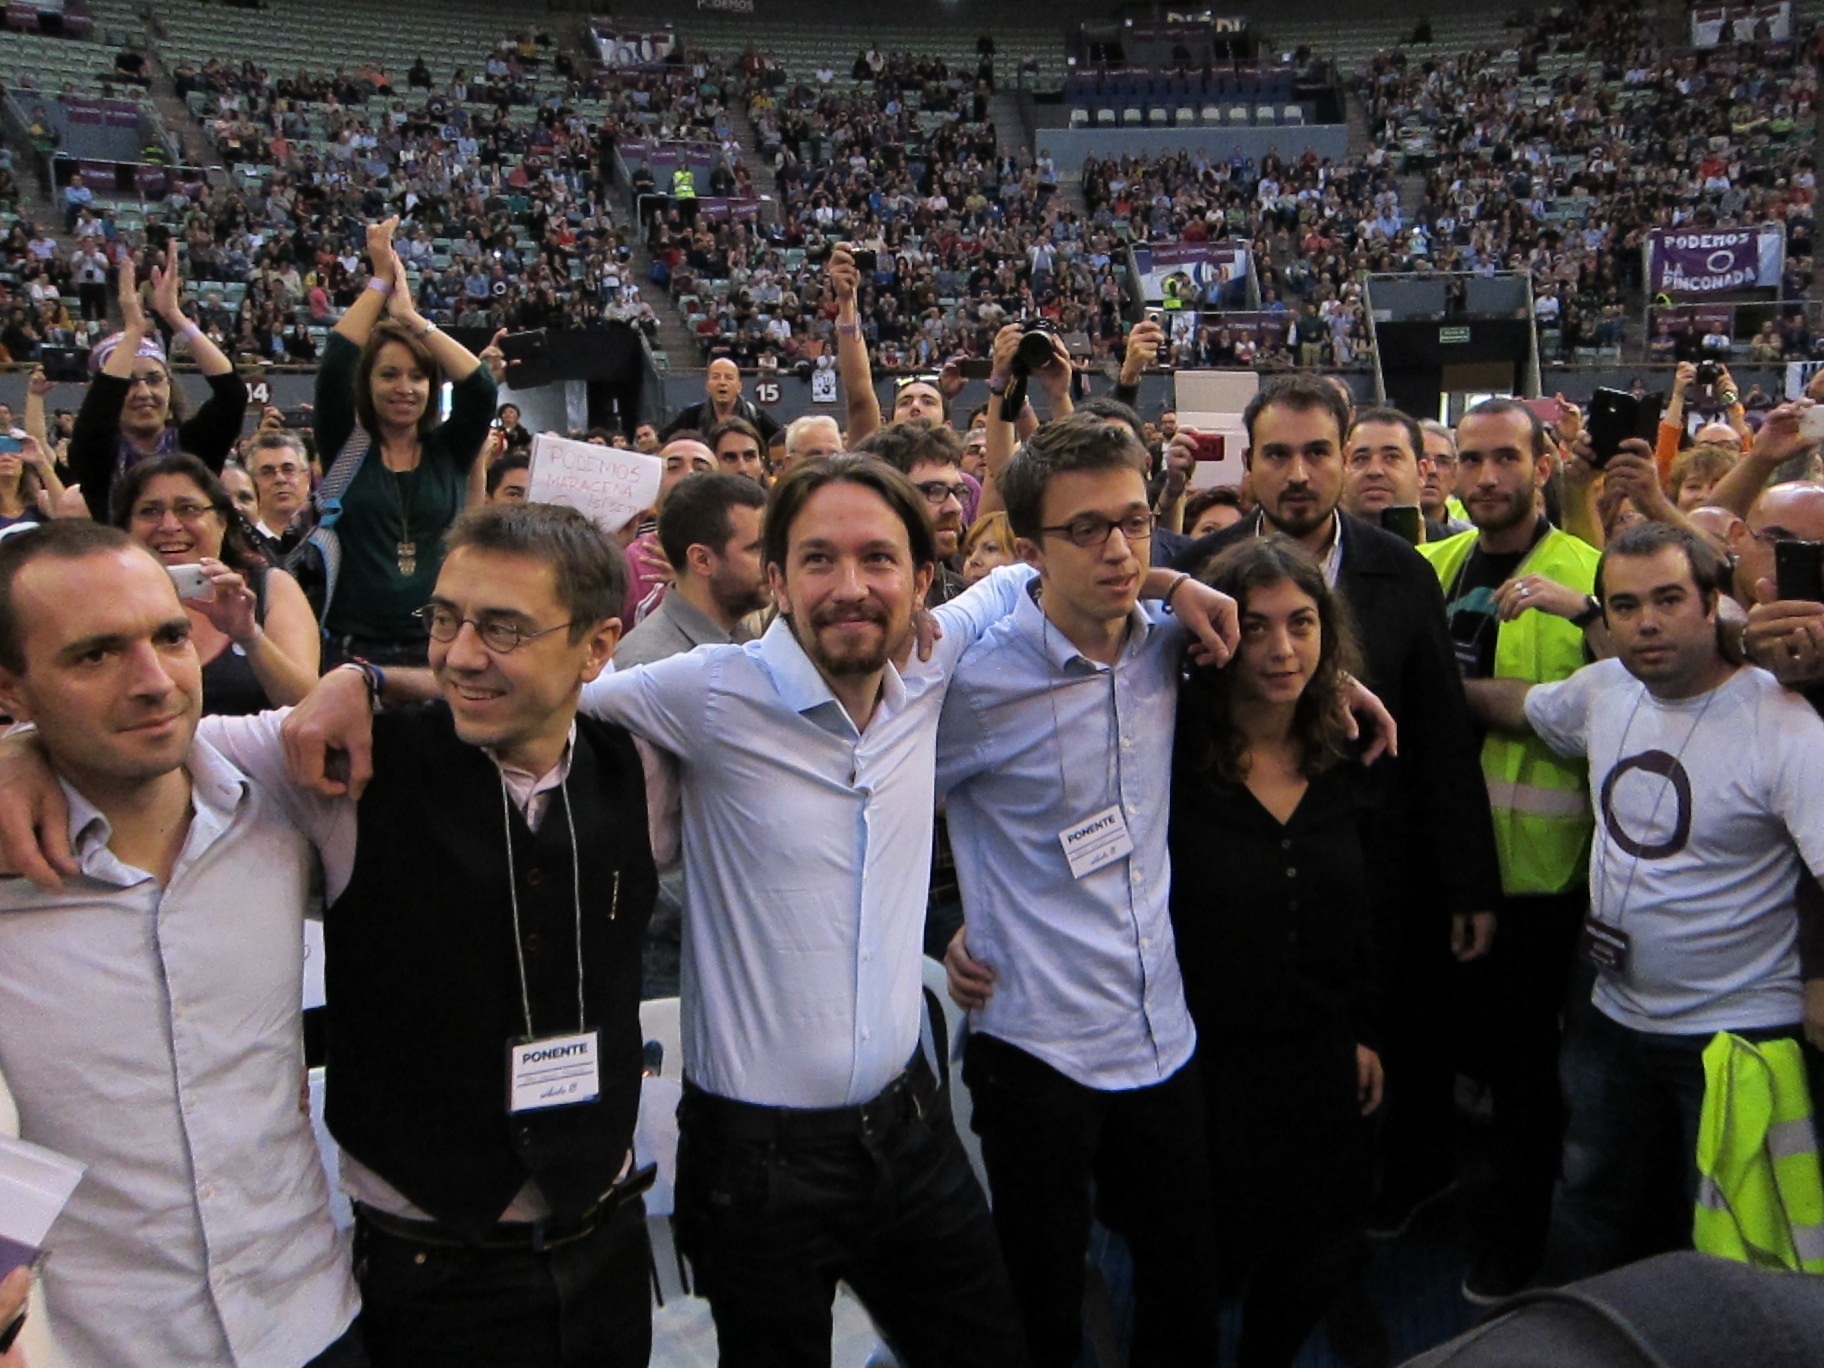 Fractura en el tribunal interno de Podemos por los estatutos que castigan las filtraciones